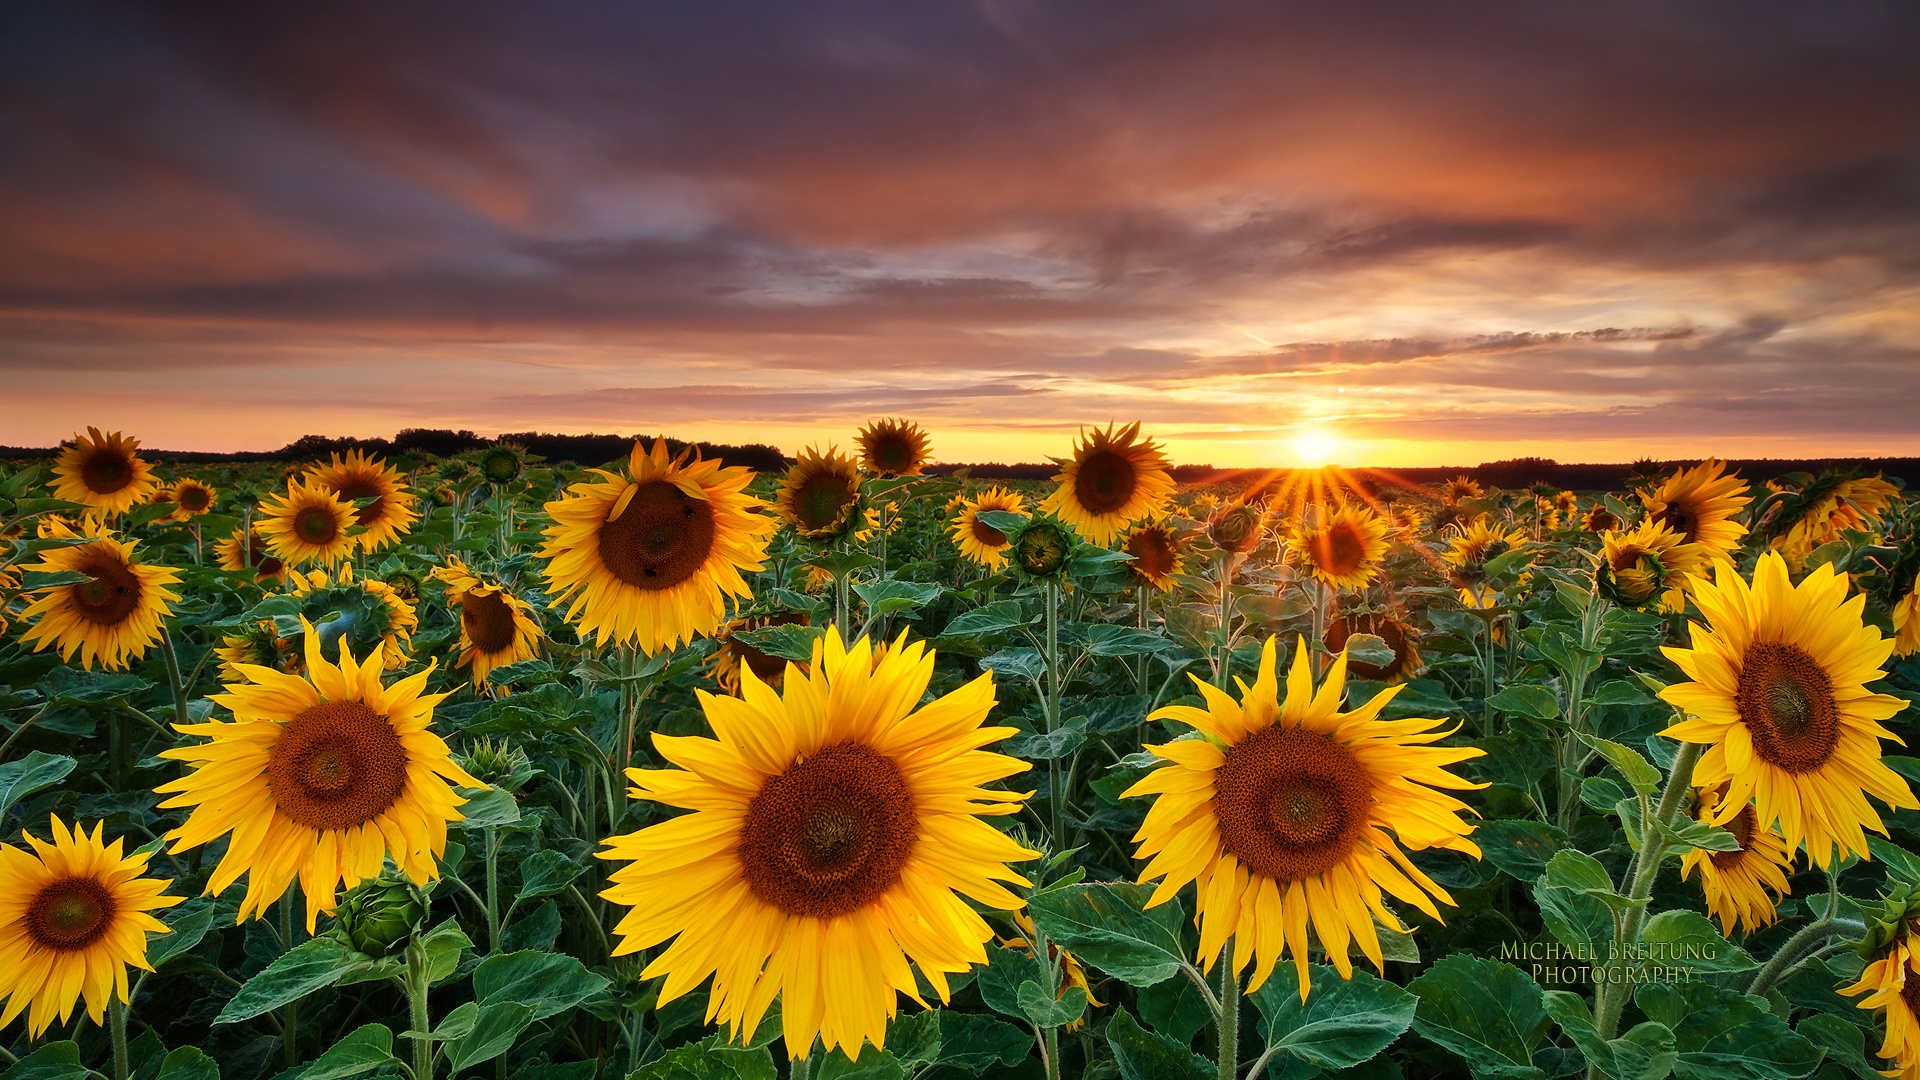 sunflower image for desktop